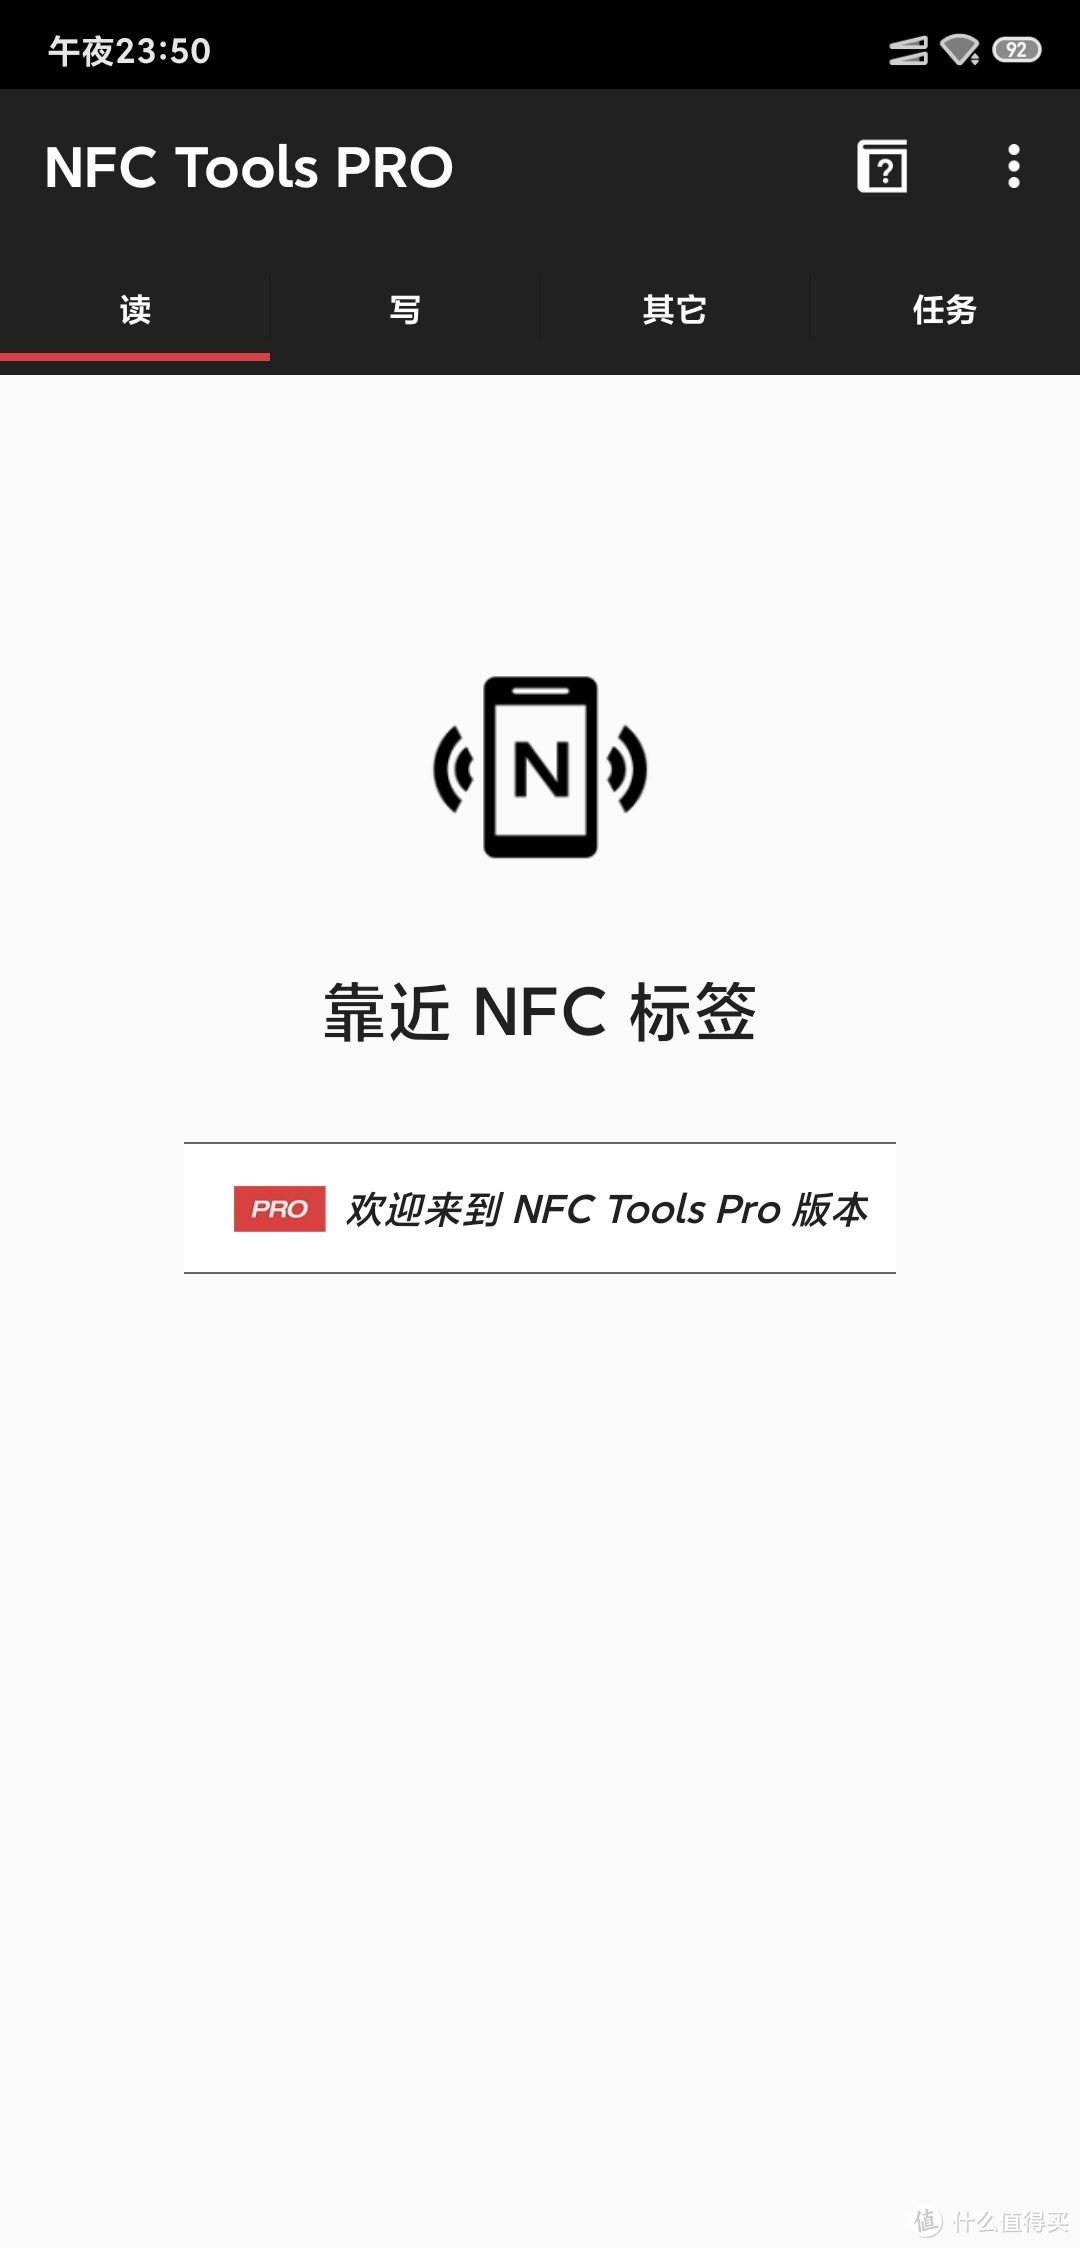 超低价NFC卡实现小米碰碰贴实现全部功能记录——功能不少 物美价廉